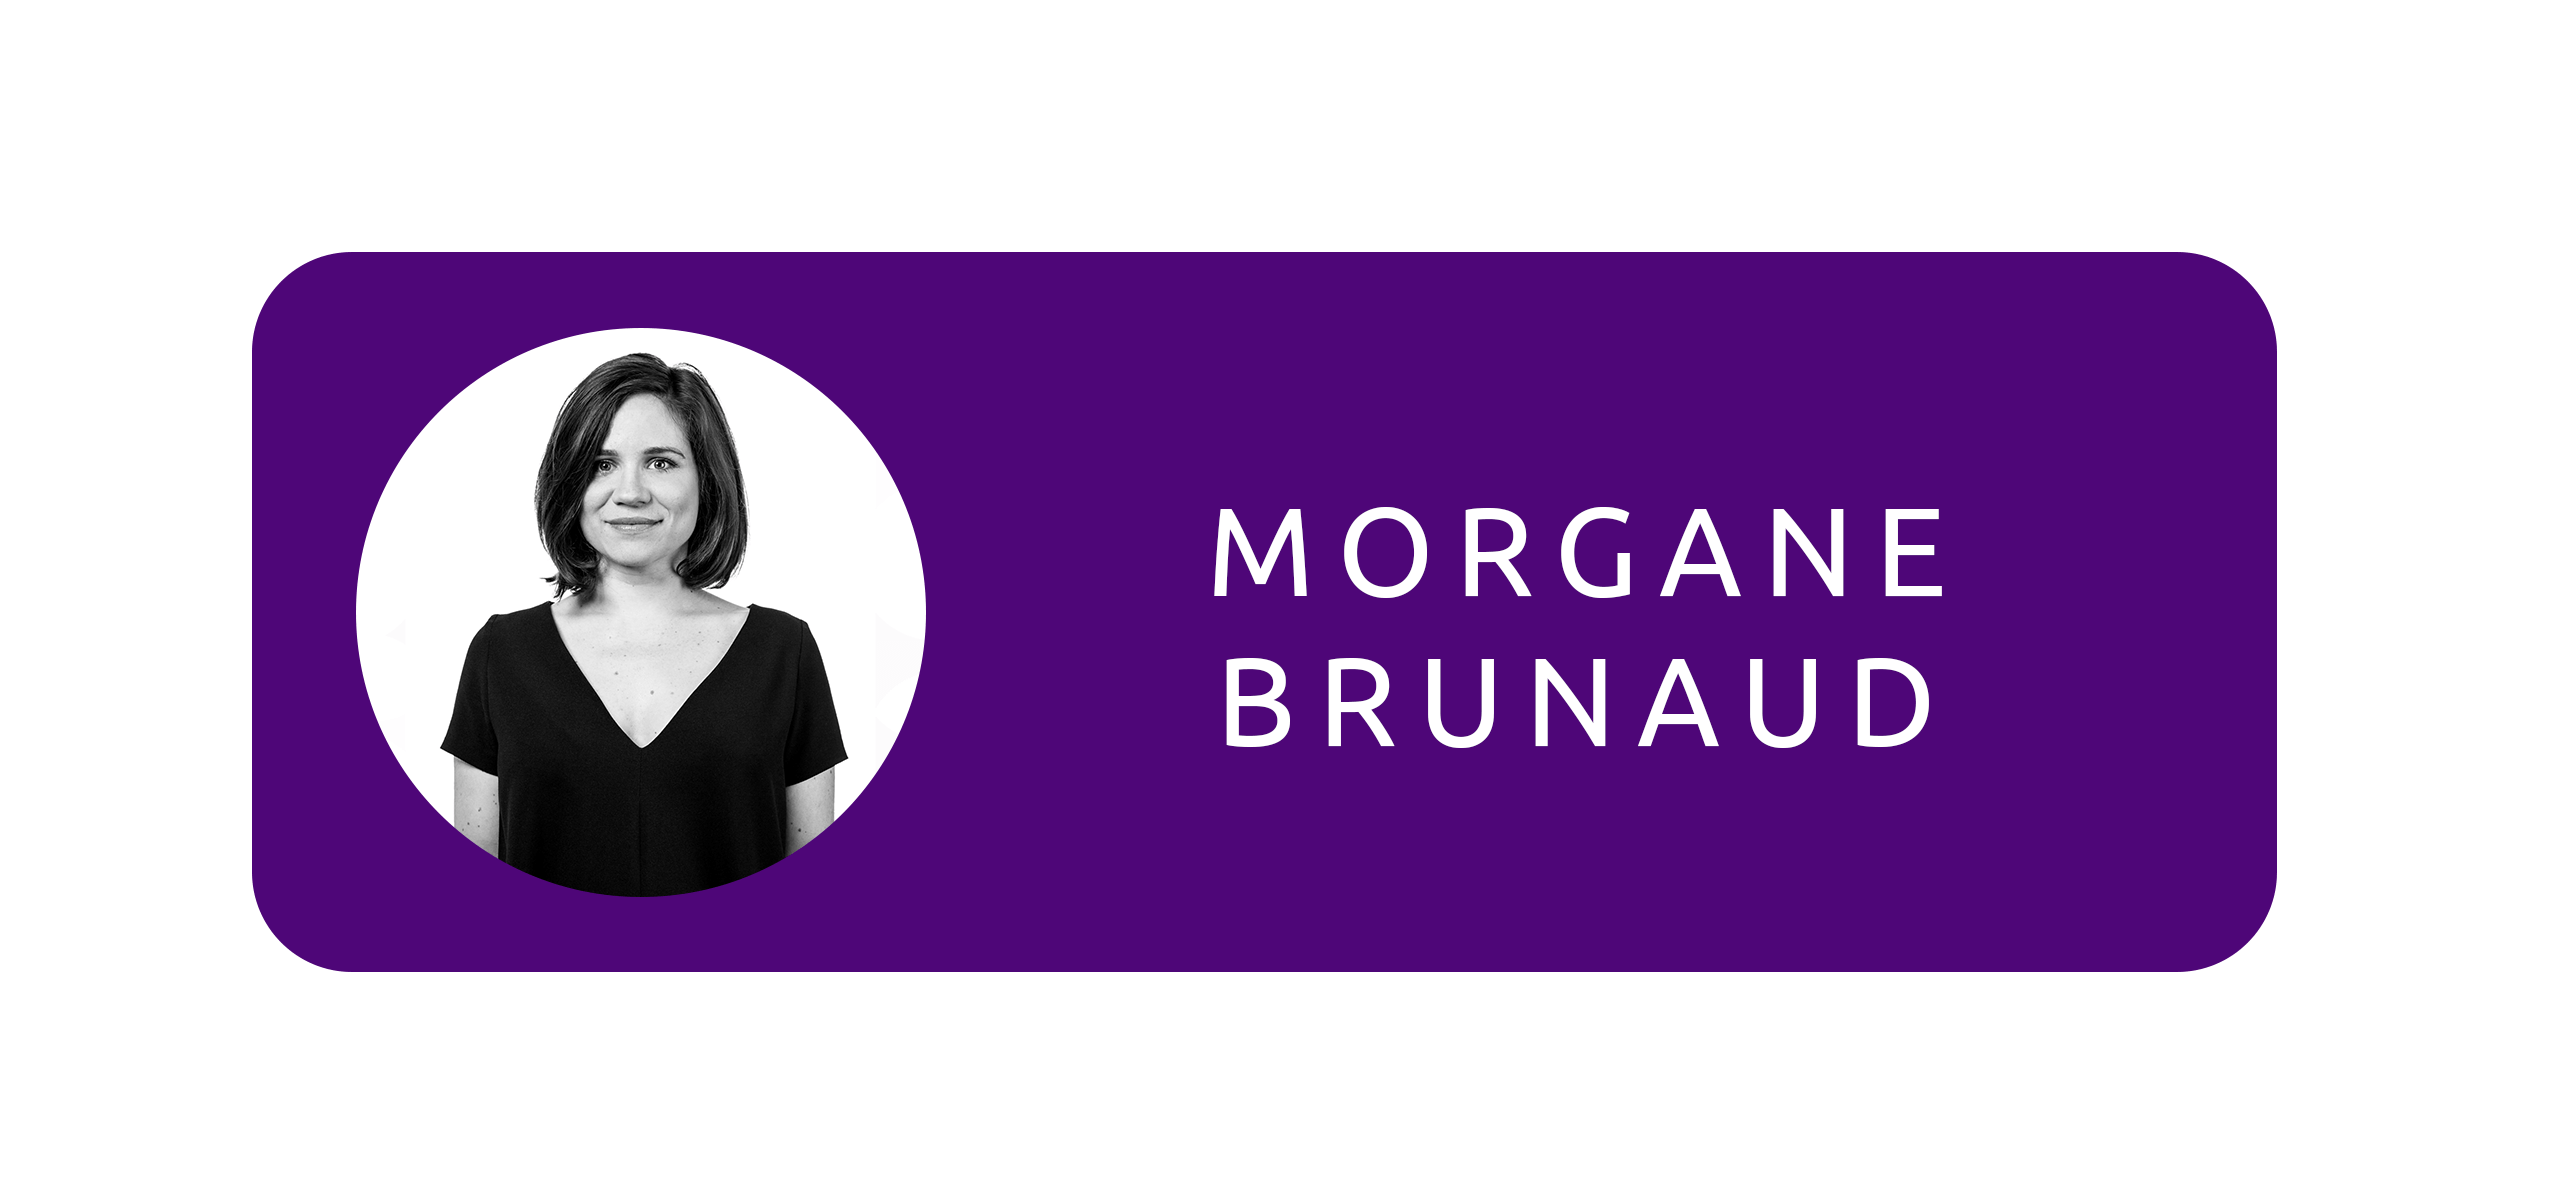 Morgane Brunaud commande publique